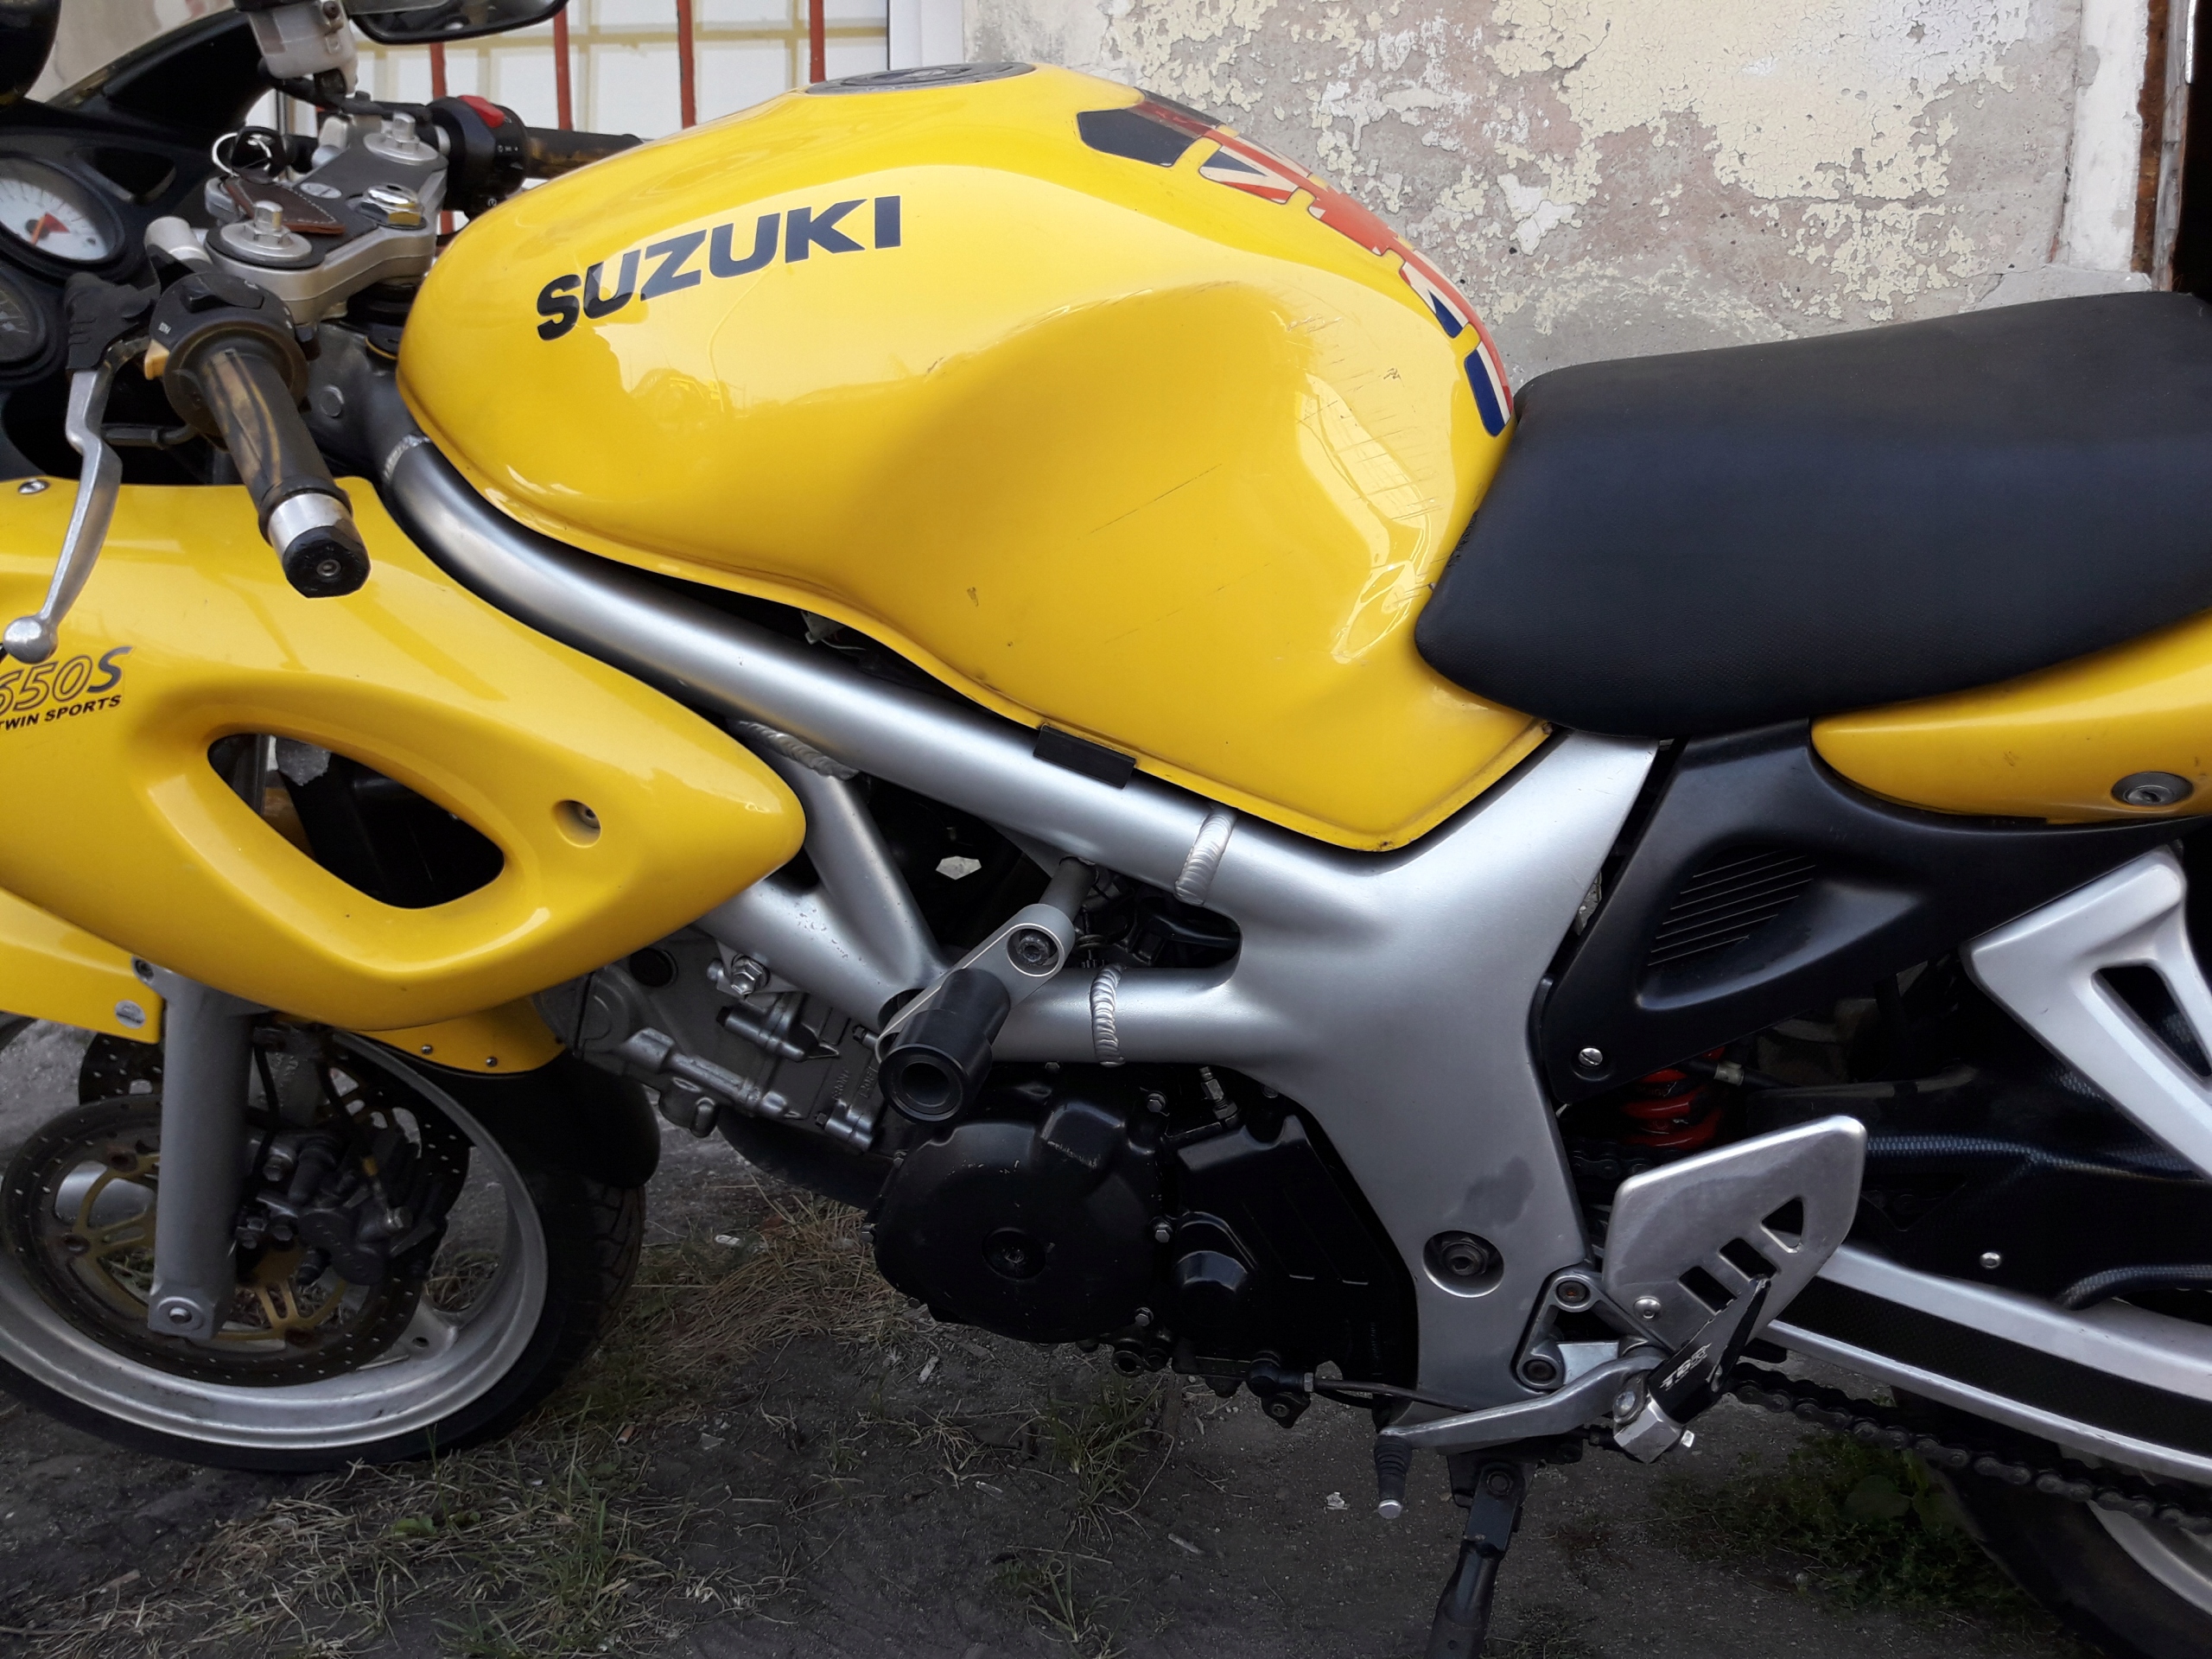 Motocykl Suzuki SV 650 S 7551843634 oficjalne archiwum